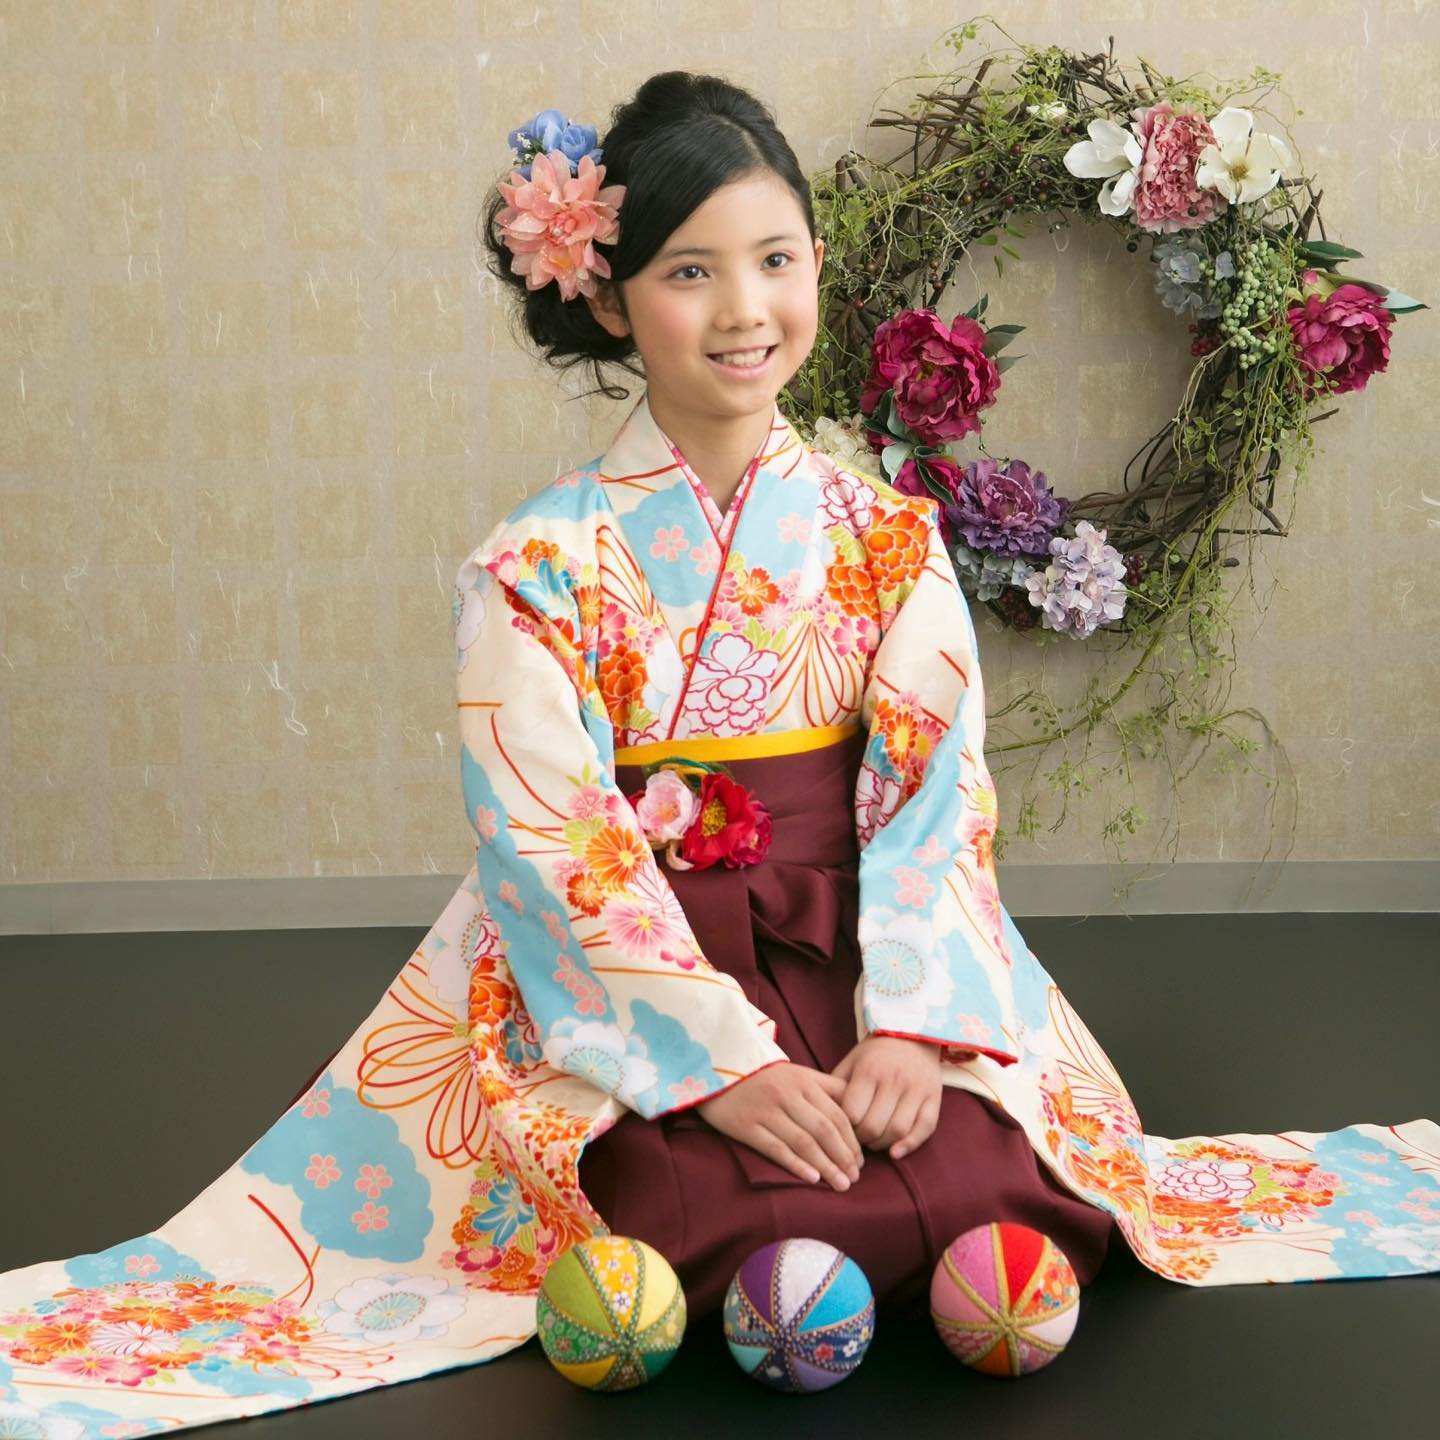 小学生卒業袴撮影
 
白地に色鮮やかなお花があしらわれたお着物がお嬢さんの雰囲気にも合っていて素敵ですね🥰
 

︎
︎
︎
︎
︎